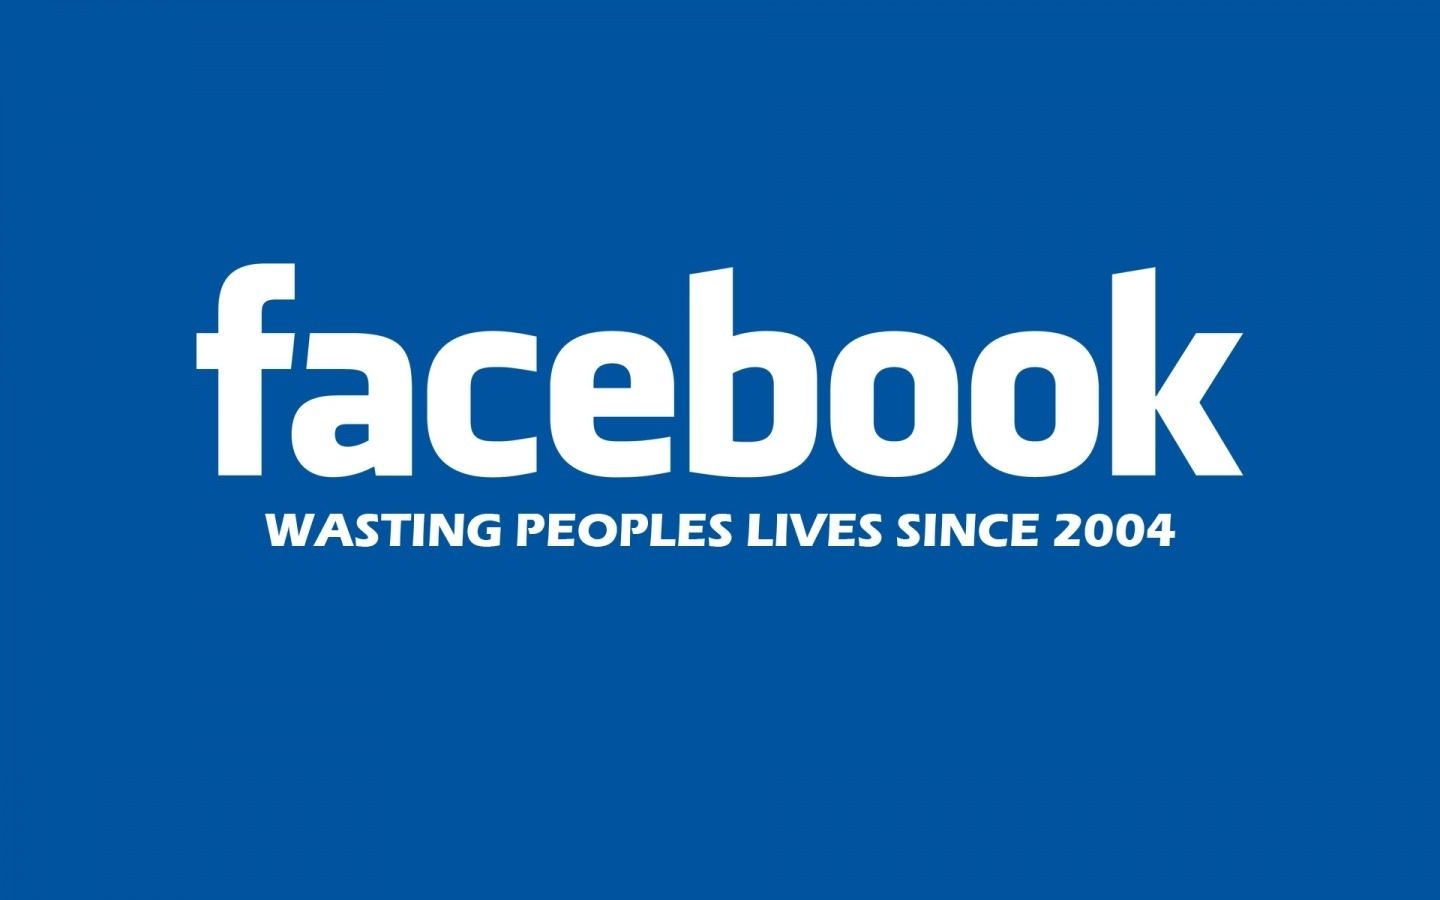 Funny For Facebook Hd Desktop Wallpaper, Instagram - Facebook Wasting People Lives Since 2004 , HD Wallpaper & Backgrounds